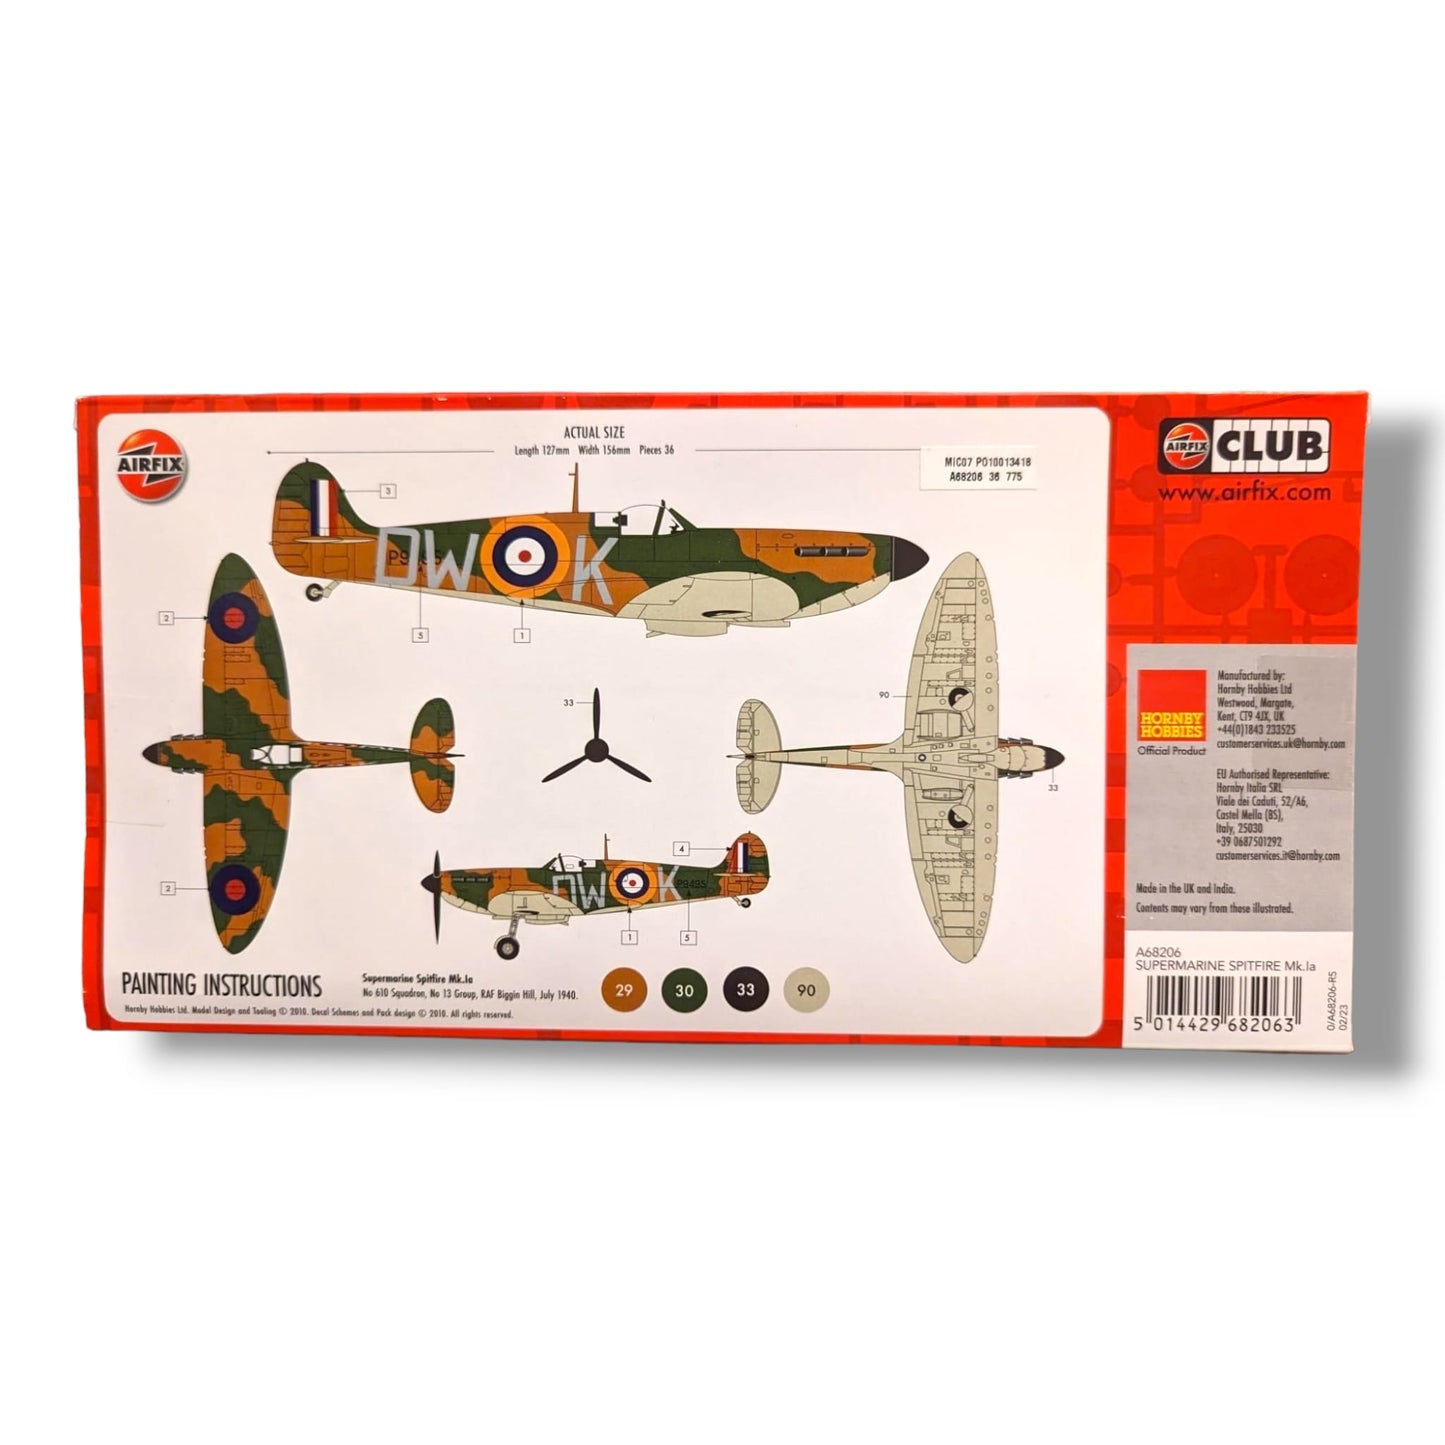 Airfix 1:72 Spitfire Mk.1a - Starter Kit